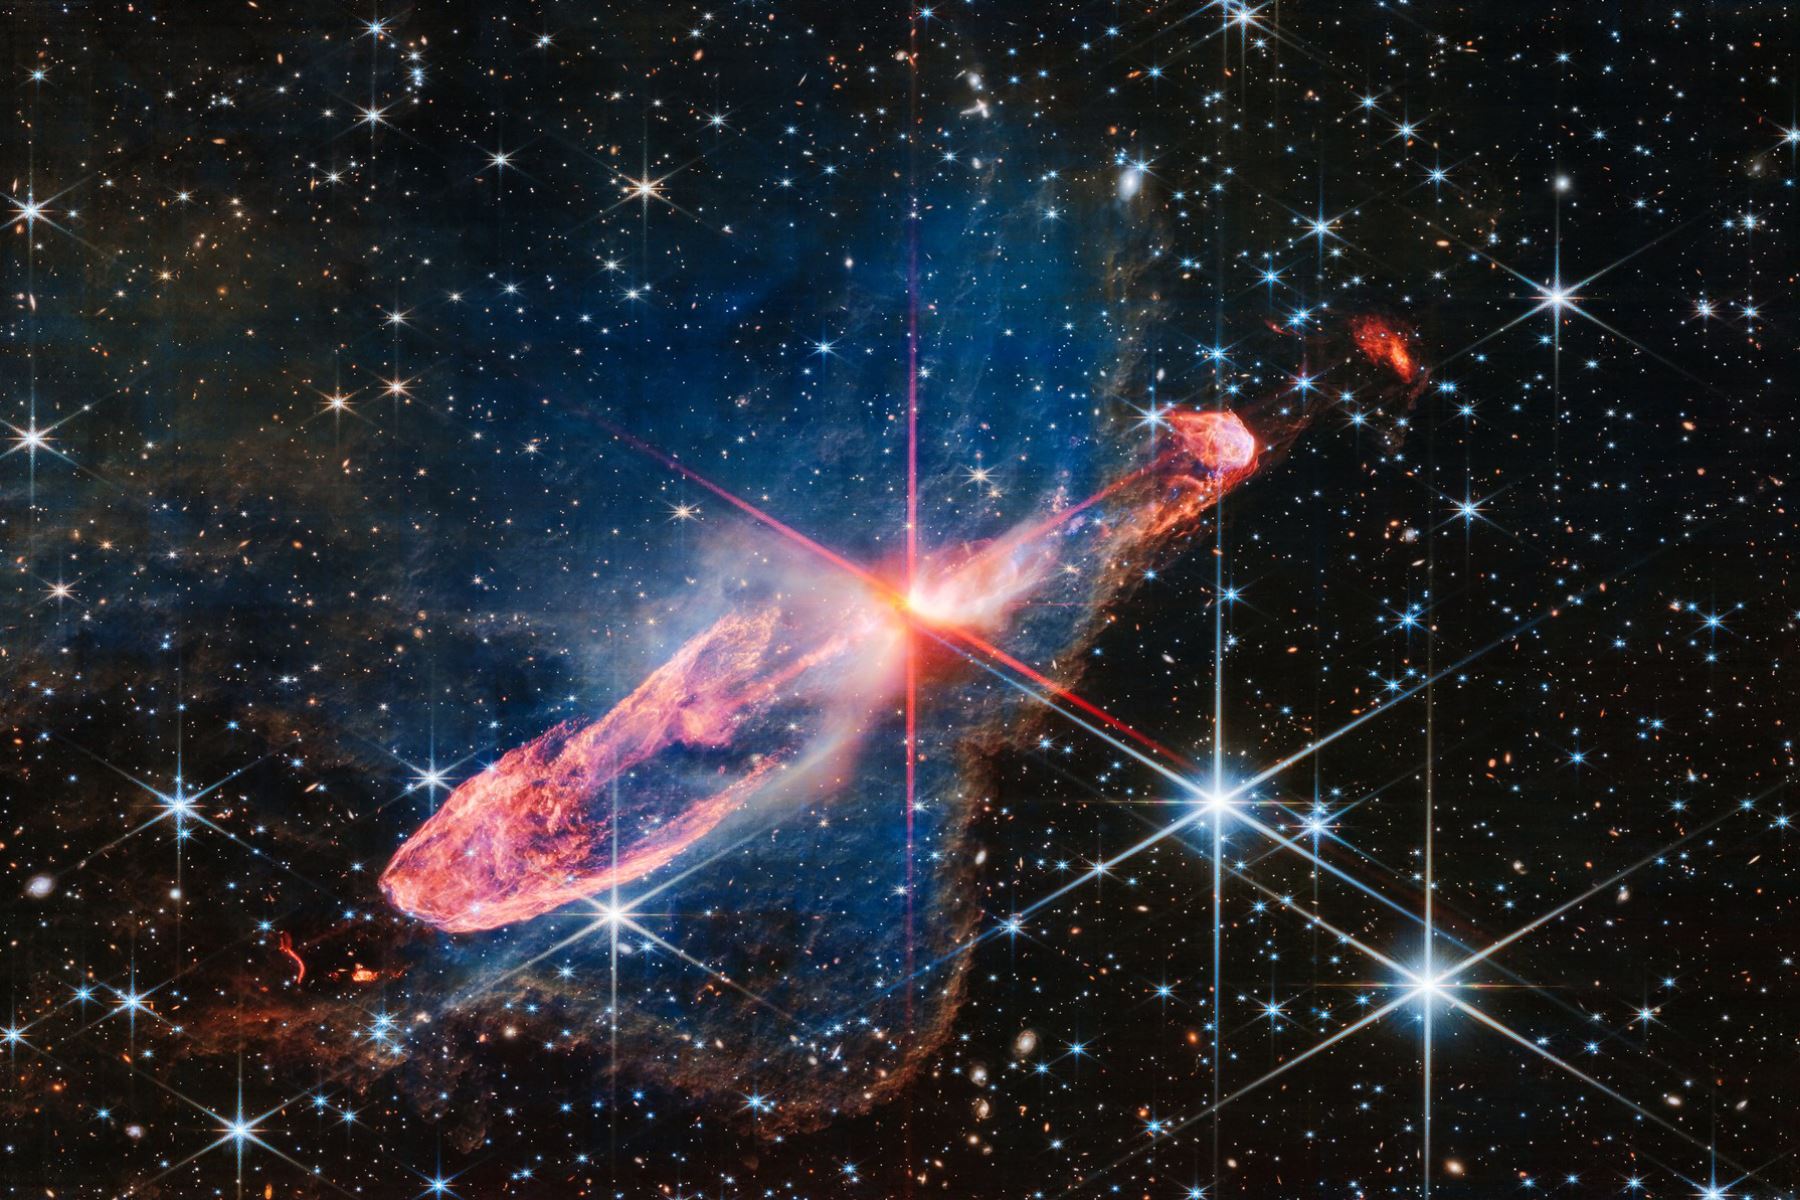 Mire la mancha de color blanco anaranjado en el centro de esta imagen. Enterradas profundamente en un disco de gas y polvo hay dos estrellas en formación activa. Foto: @NASAWebb